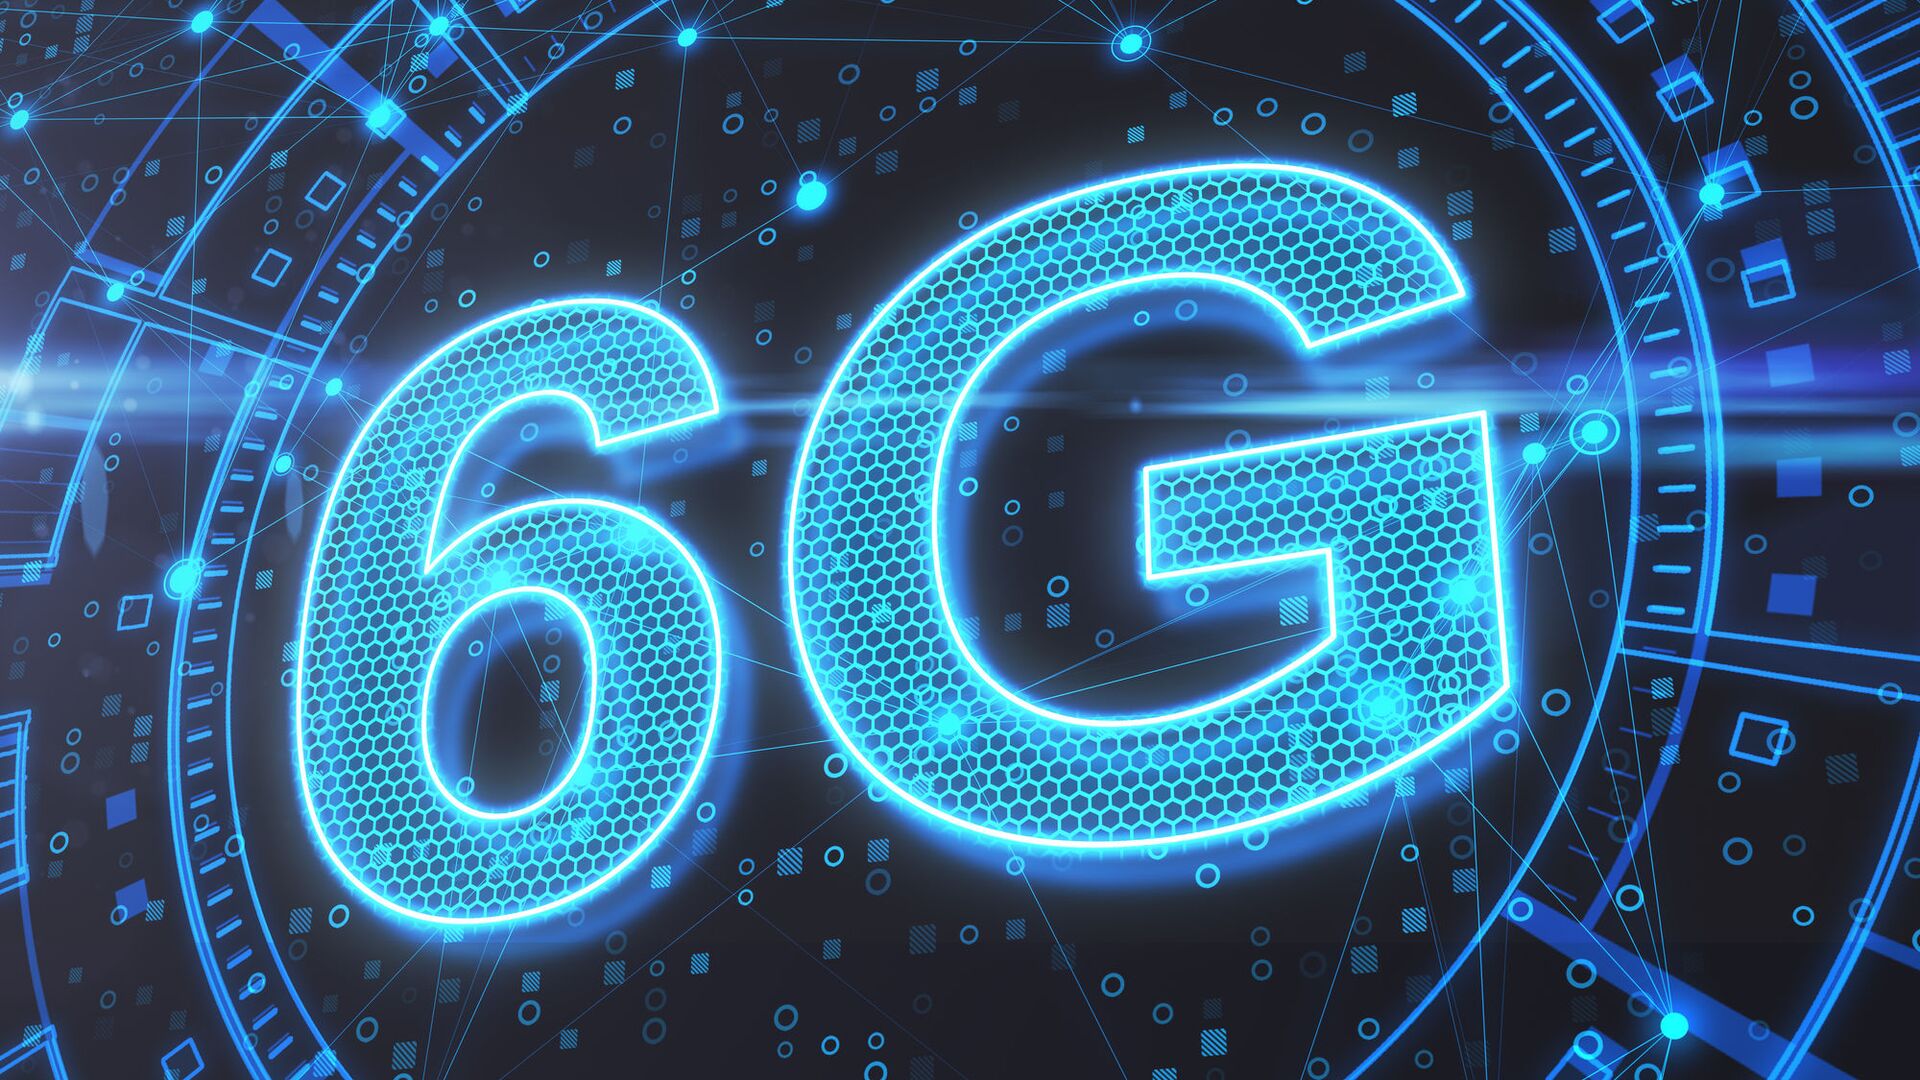 5G thế giới, Viettel 6G tính:
Cùng Viettel trải nghiệm thế giới 5G trong những năm sắp tới, cùng với tính năng Viettel 6G cho các mạng kết nối nhanh, ổn định và an toàn hơn. Với công nghệ tiên tiến và chất lượng tuyệt vời, bạn sẽ có được trải nghiệm kết nối mạng vượt trội trên toàn cầu.